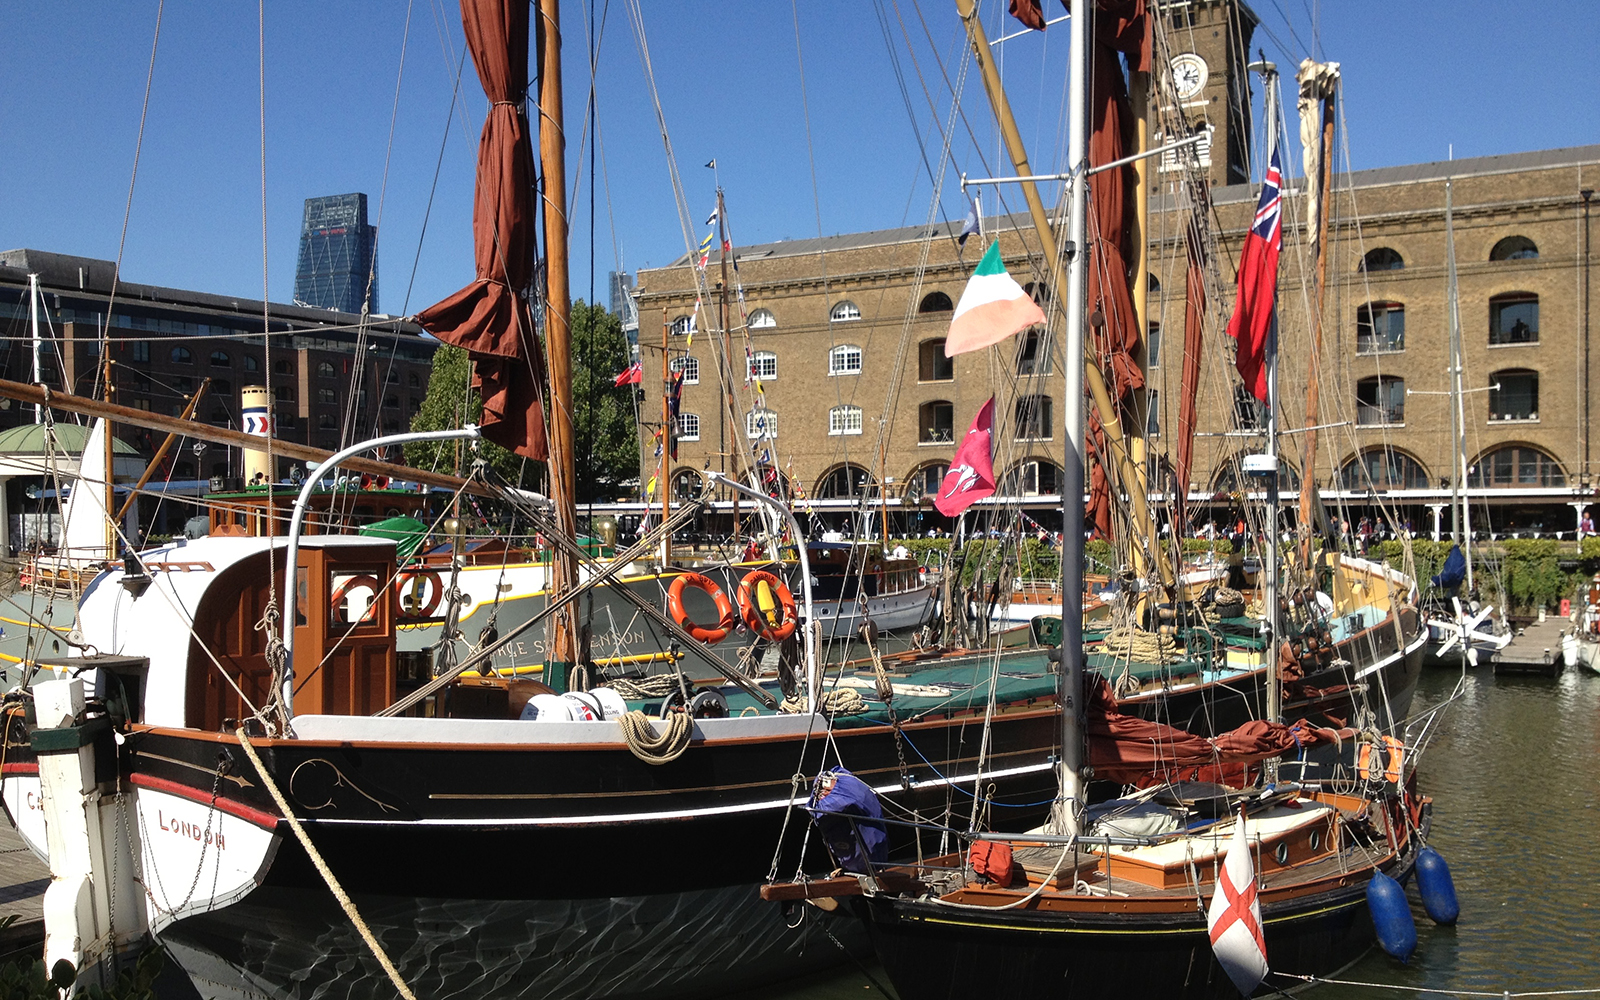 St Katharine Docks 10 September 2015